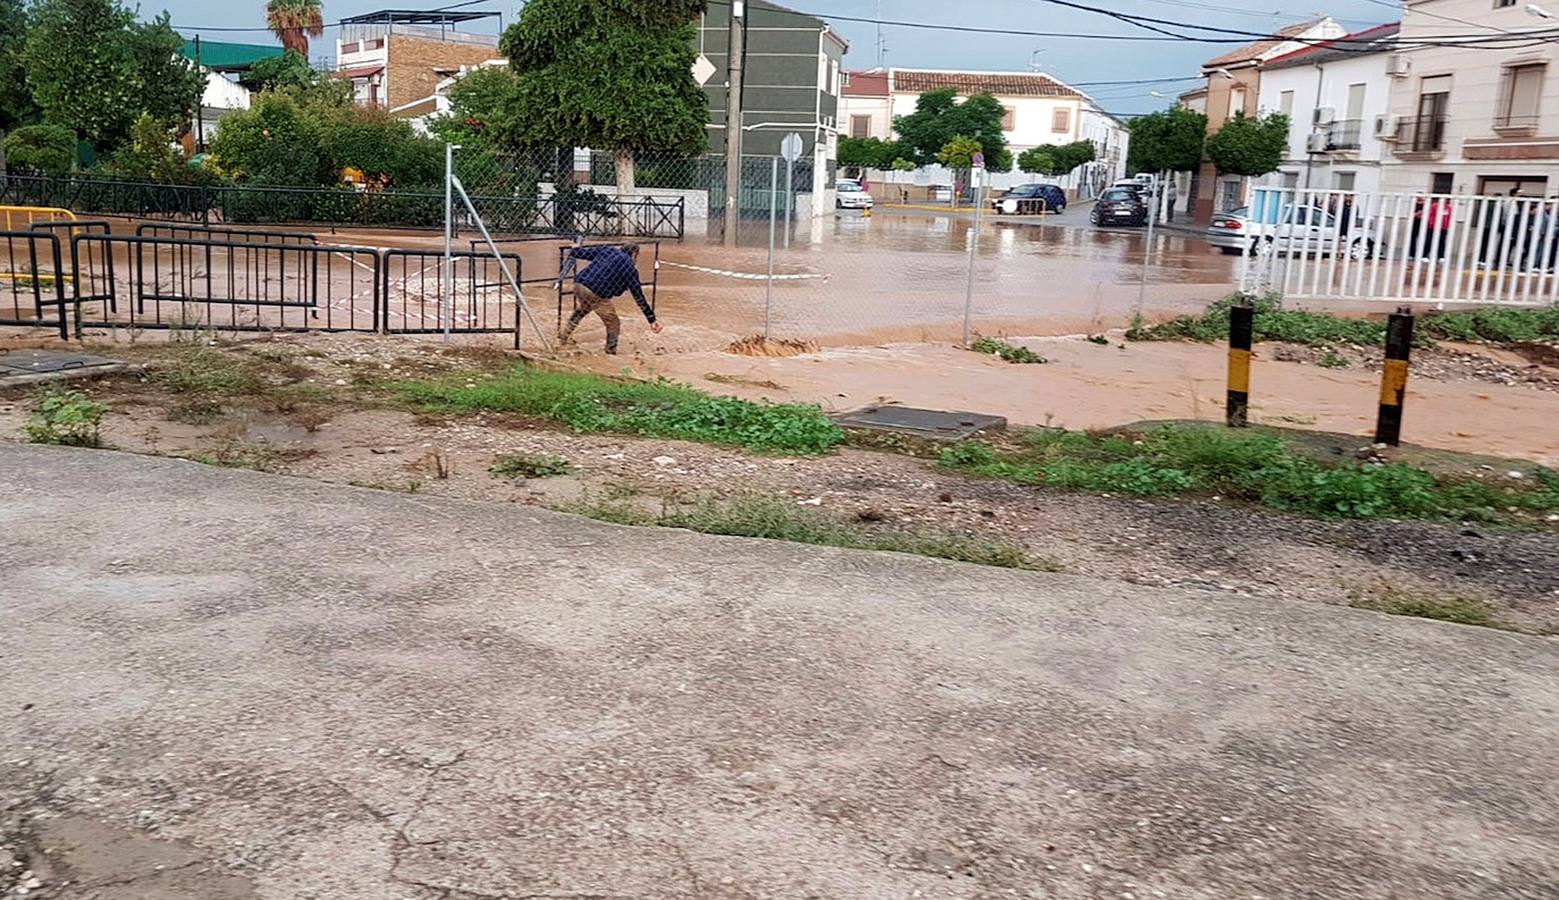 Una de las viviendas afectadas en La Roda de Andalucía (Sevilla) por las fuertes lluvias de la pasada madrugada, donde han sido evacuados varios vecinos por la crecida del río Yeguas